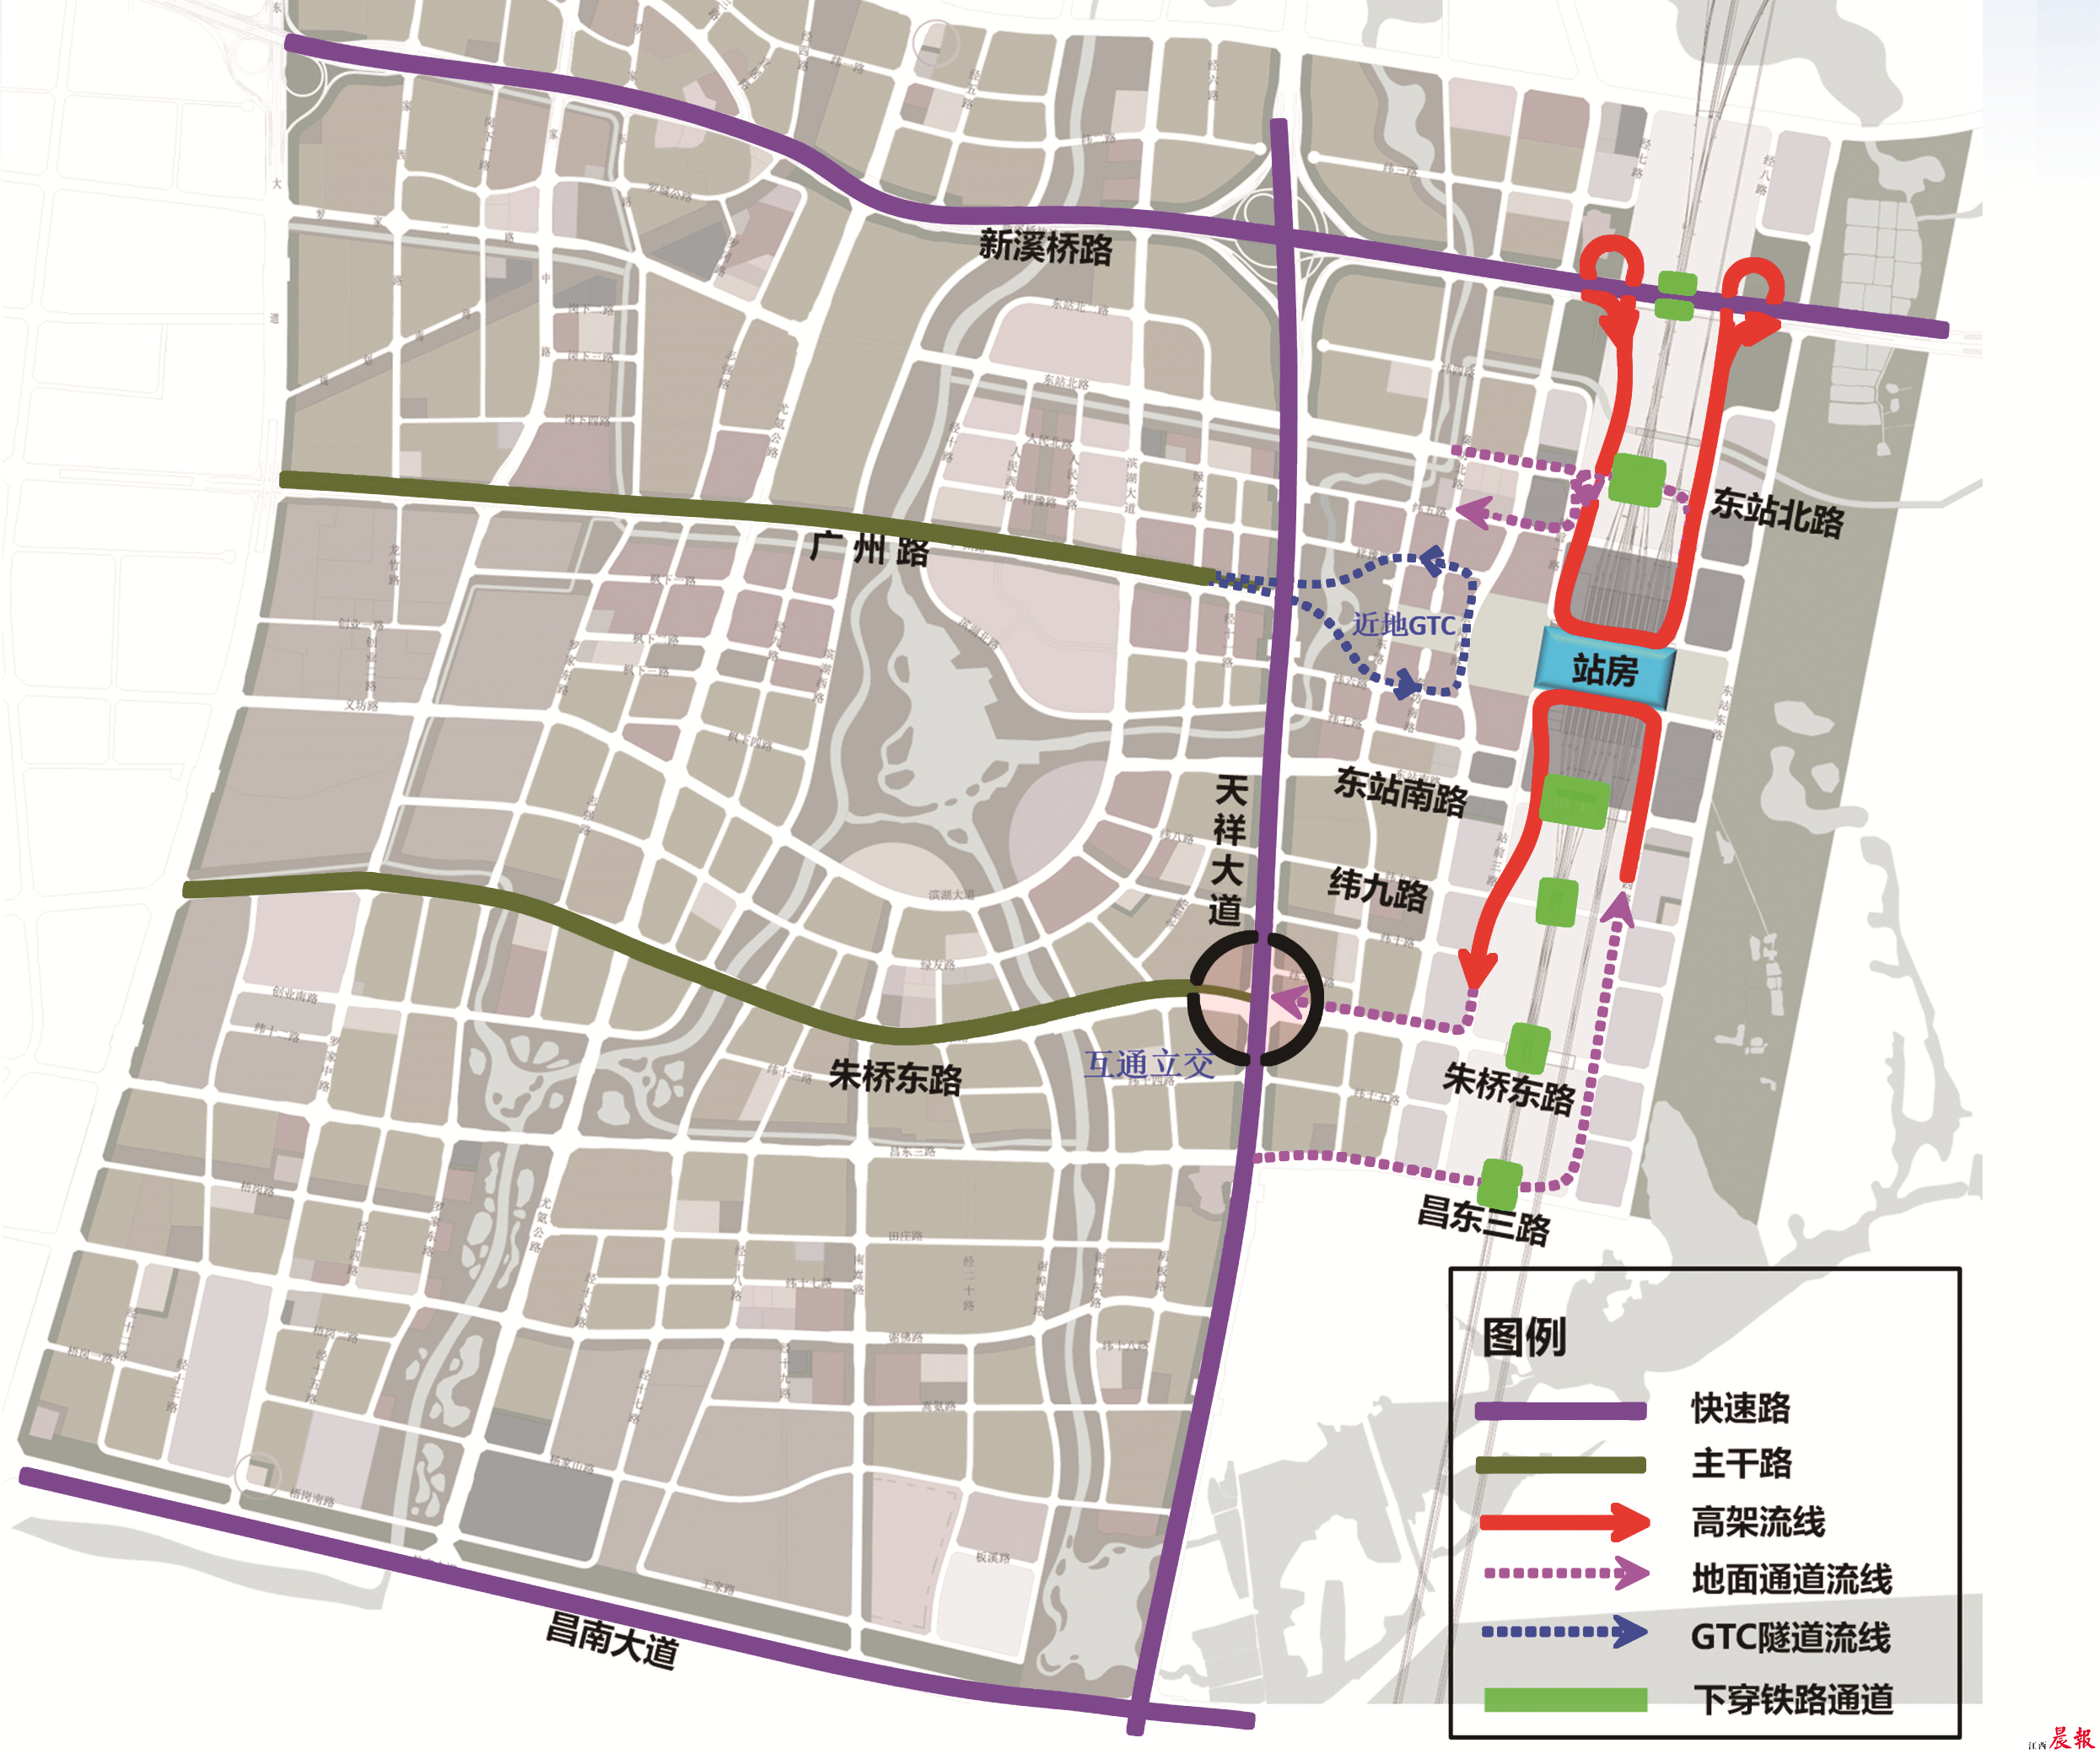 南昌东站立体交通格局确定 规划连接3条快速路和2条地铁线